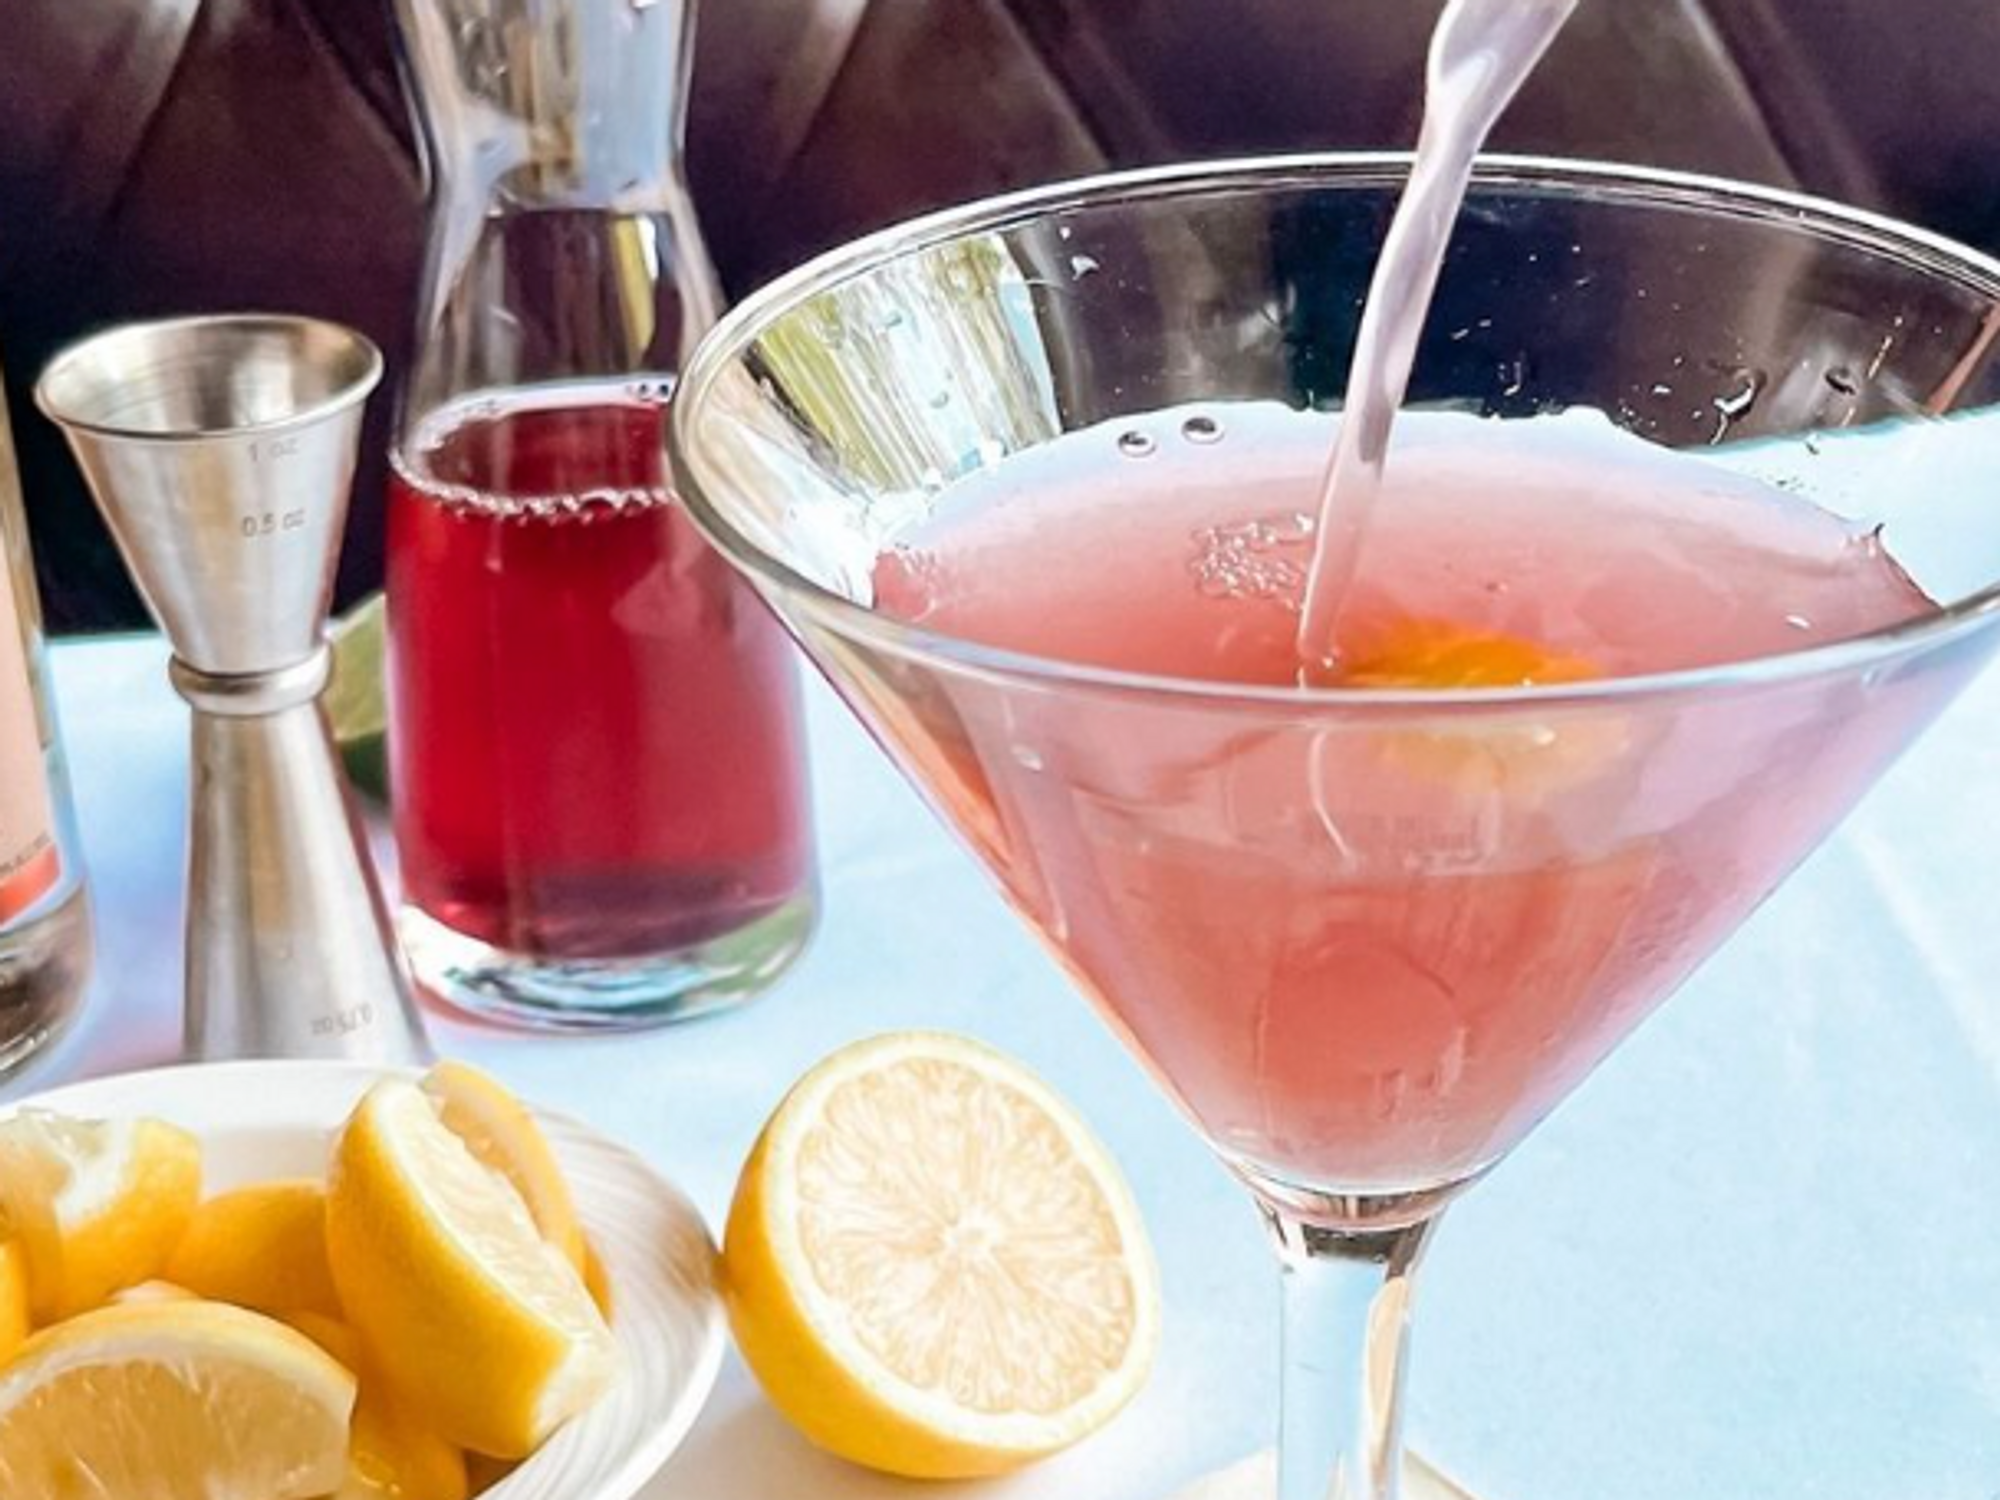 The Palm San Antonio cocktail